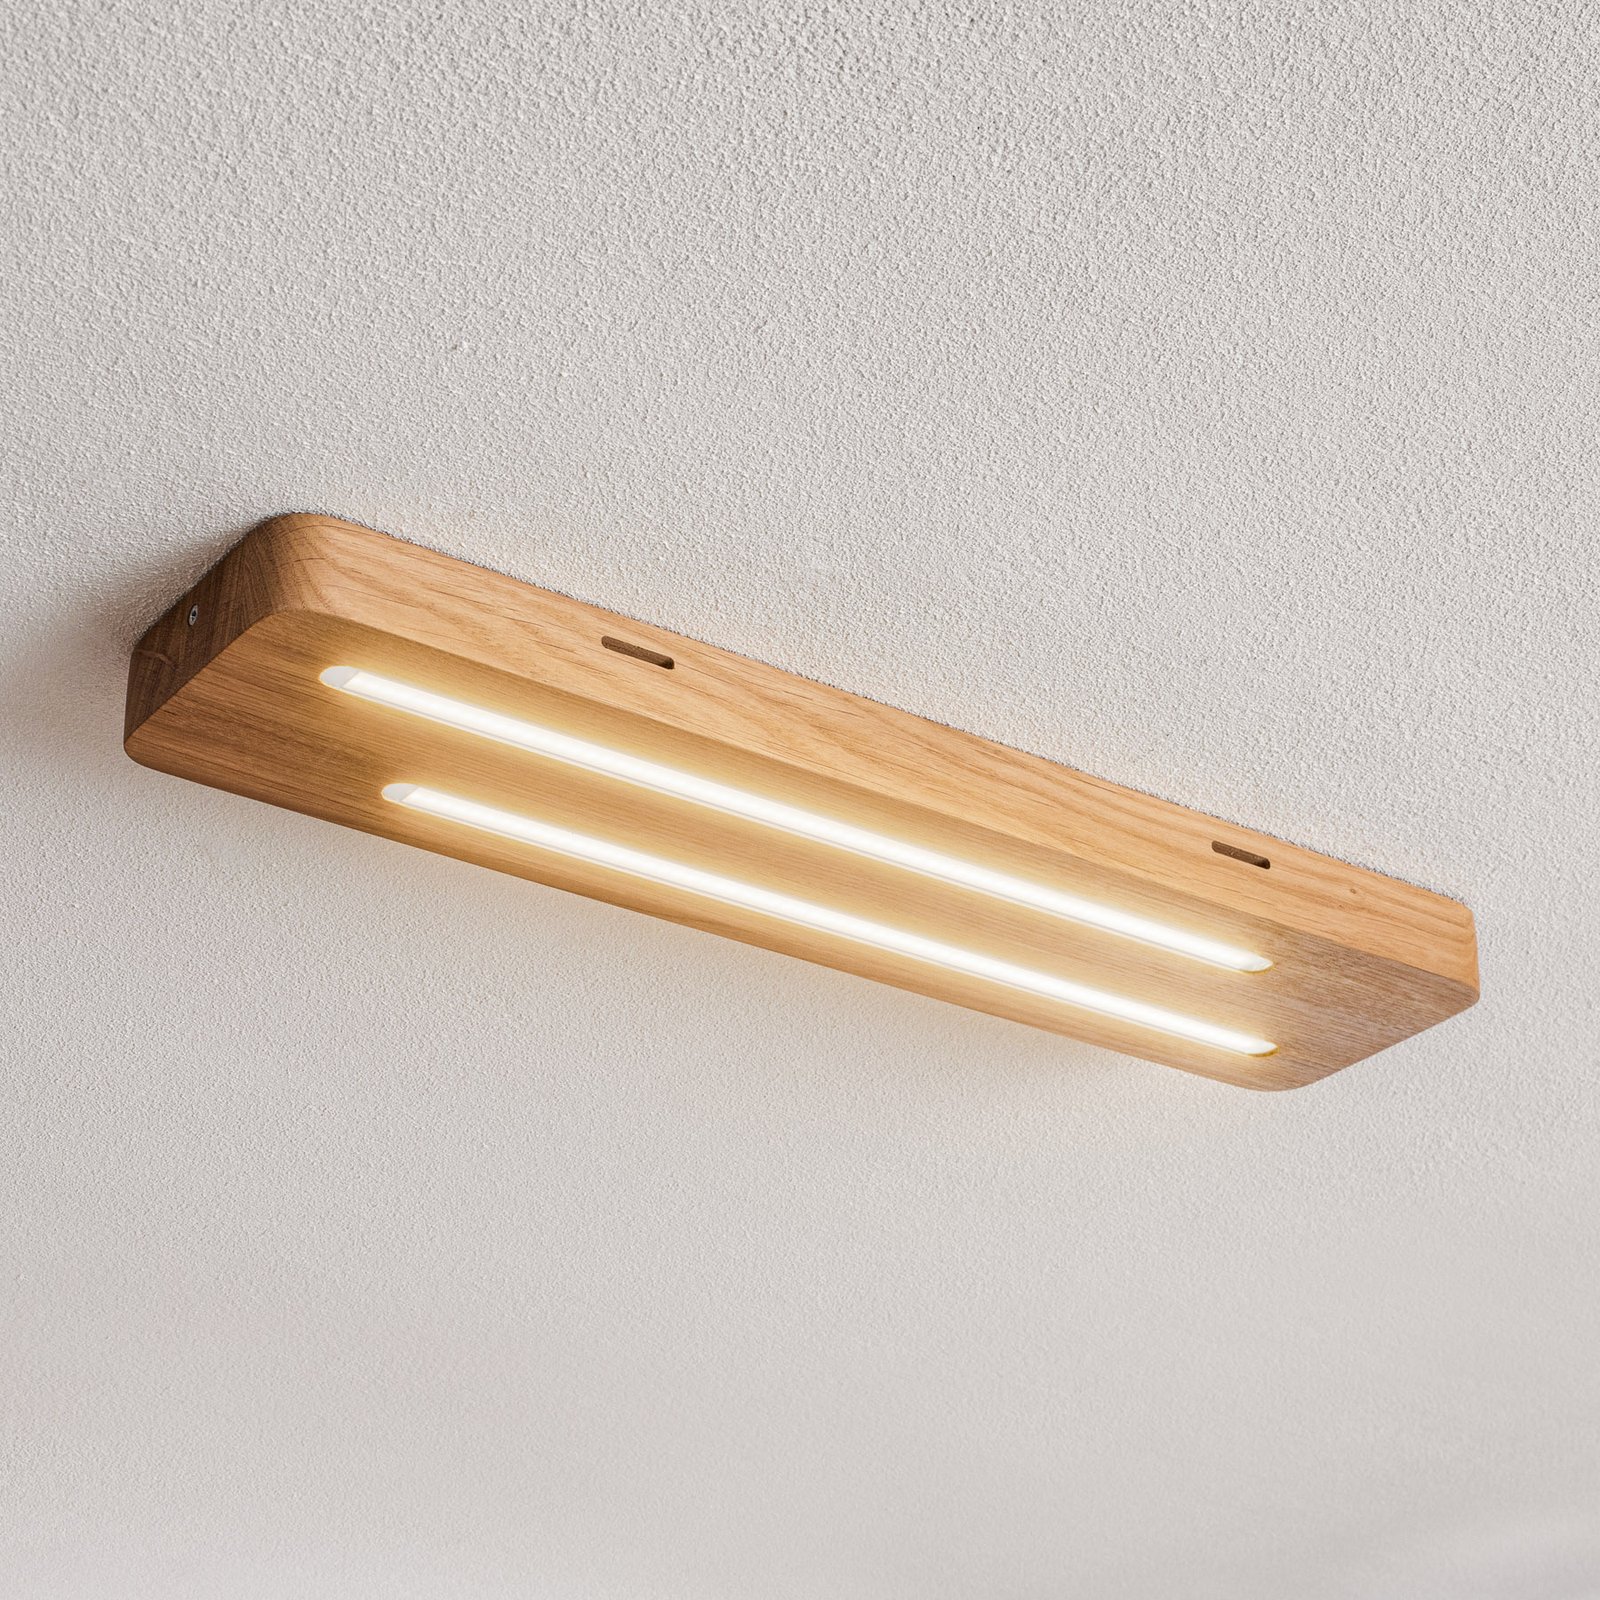 Neele - LED plafondlamp met eikenhout